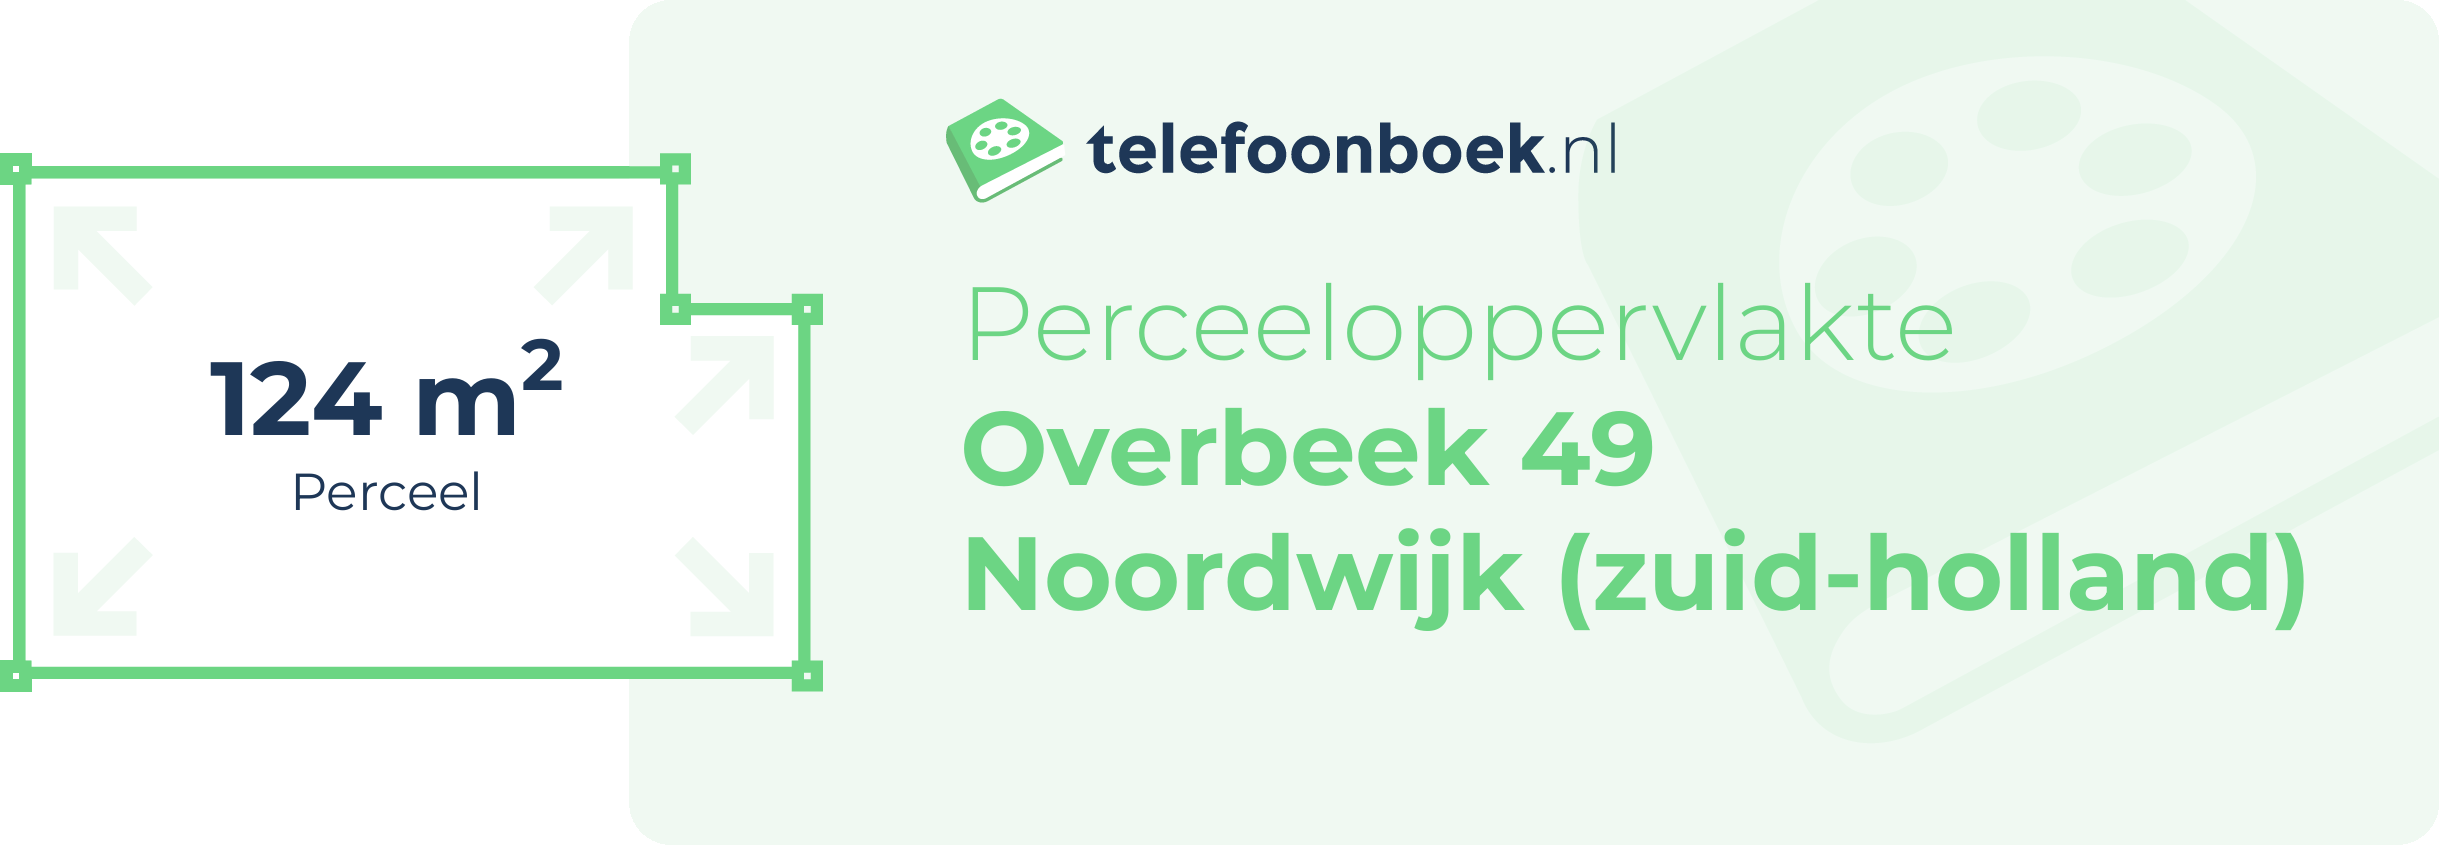 Perceeloppervlakte Overbeek 49 Noordwijk (Zuid-Holland)